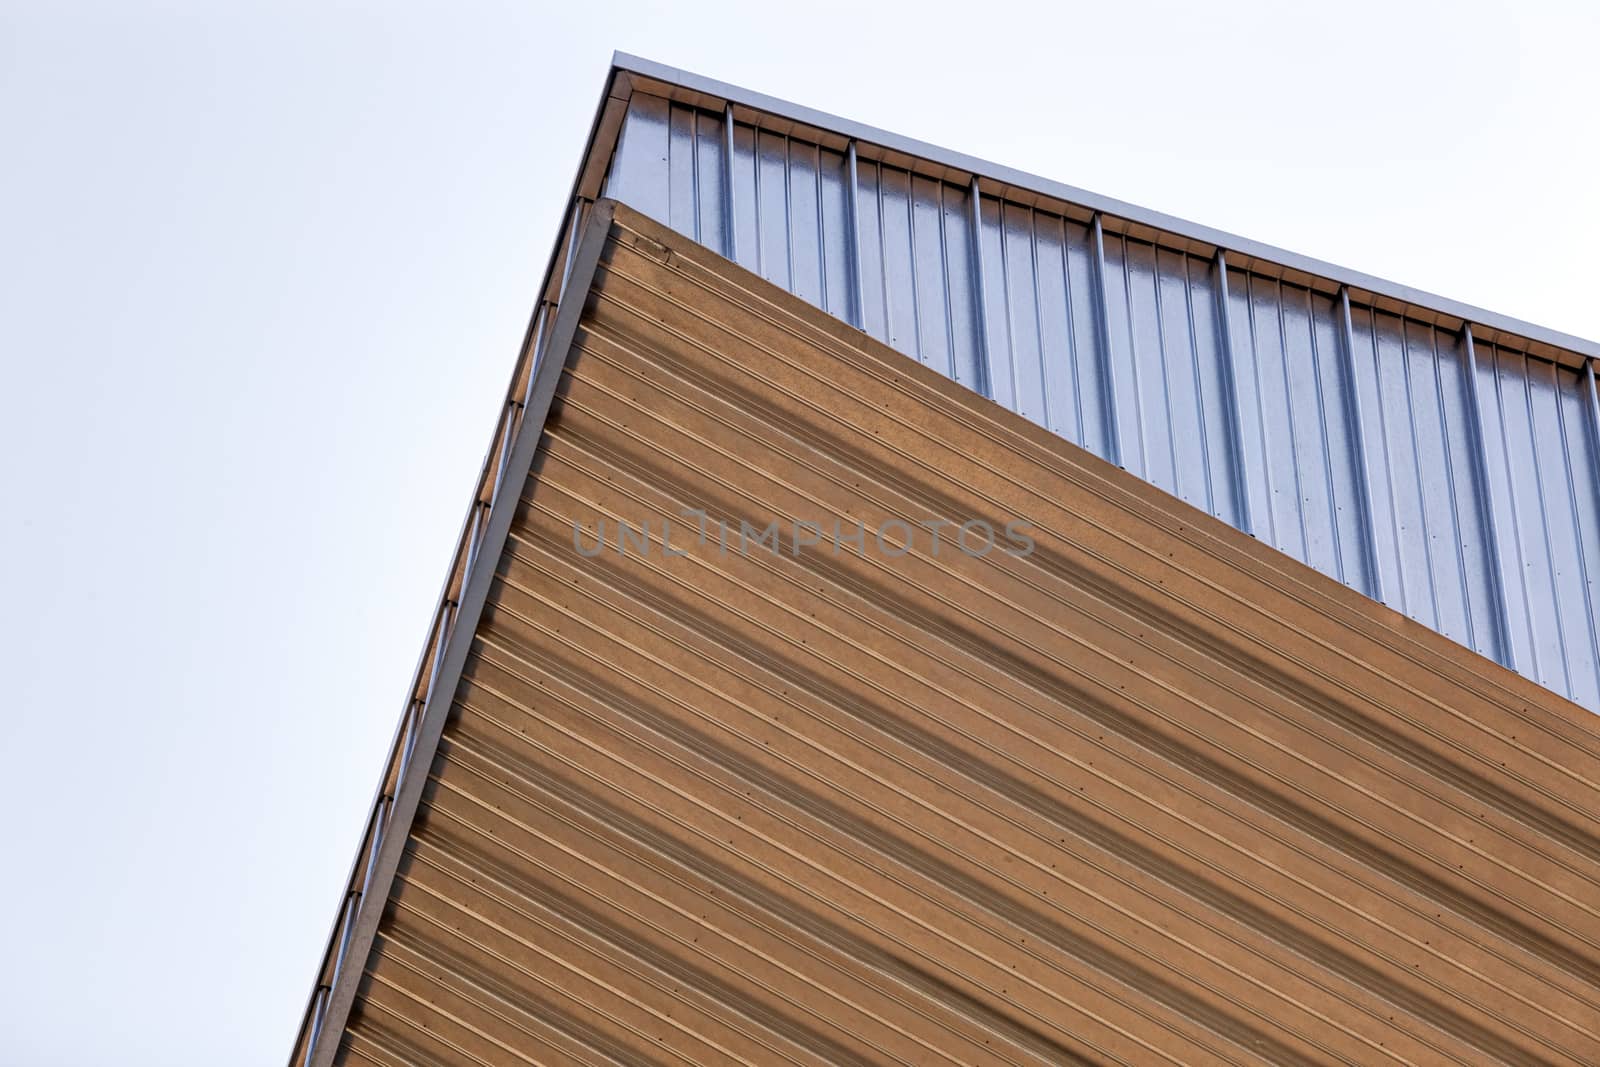 Details of aluminum facade and aluminum panels